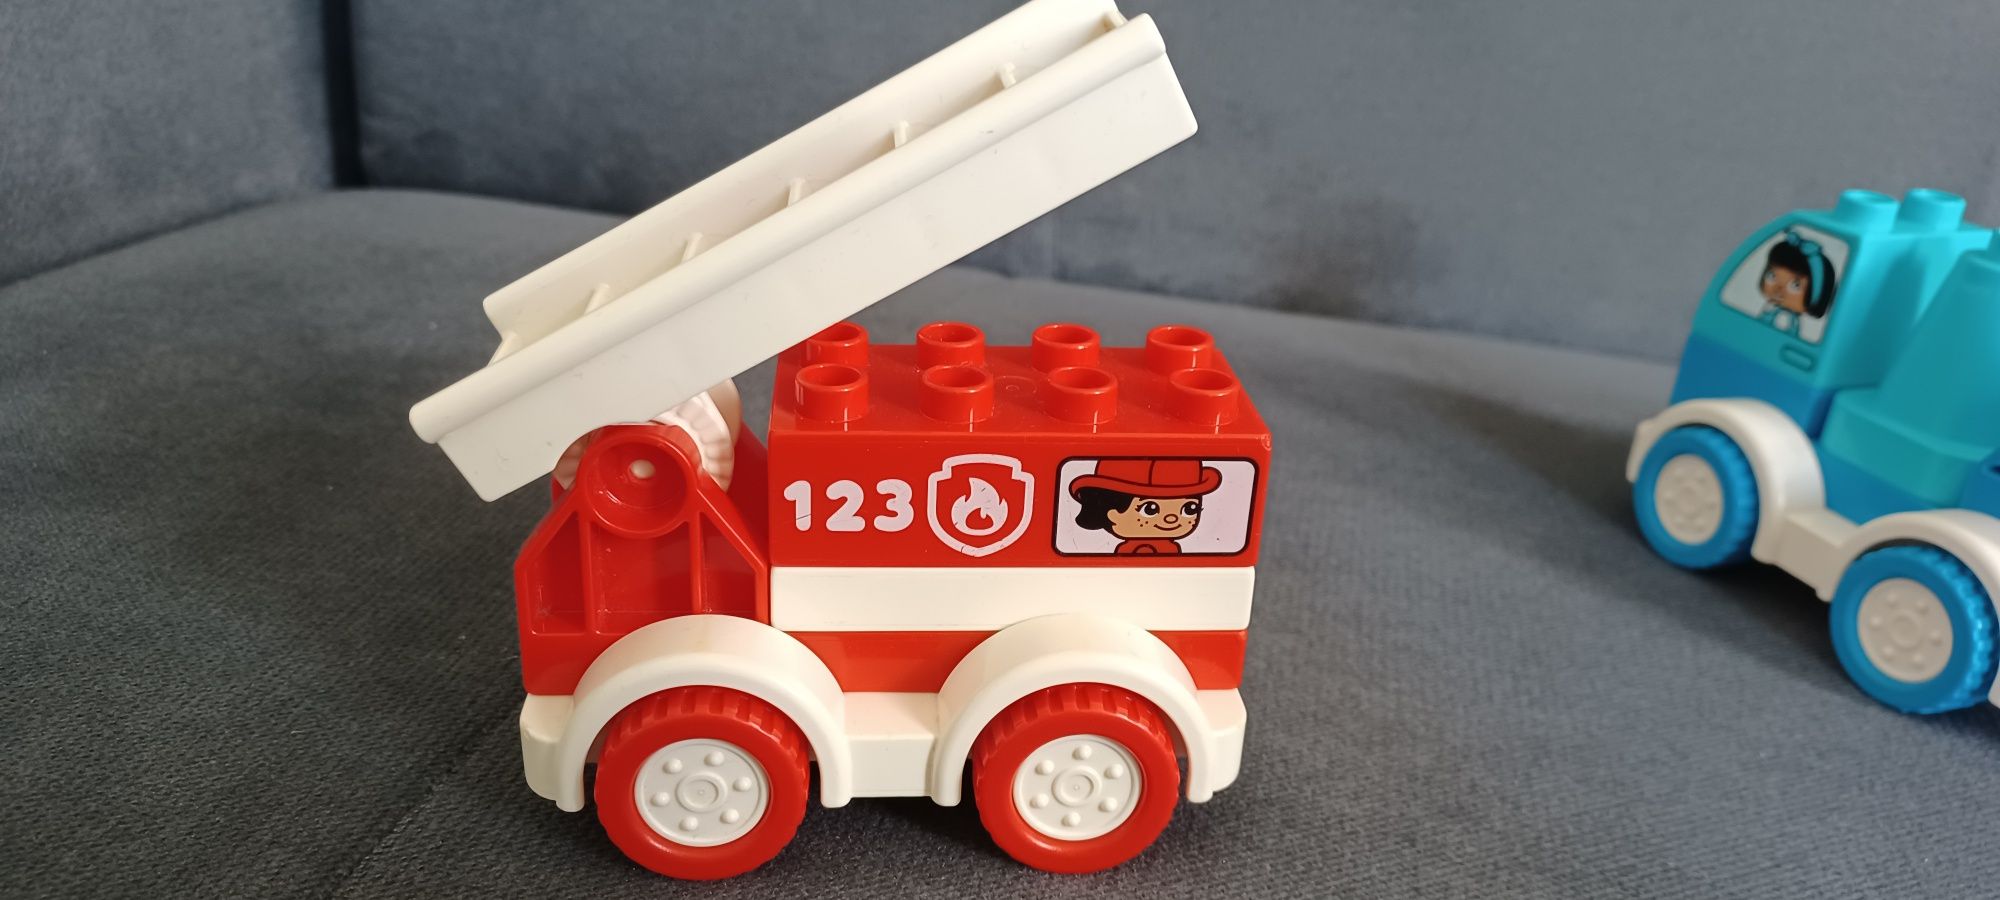 Lego Duplo straż i pomoc drogowa